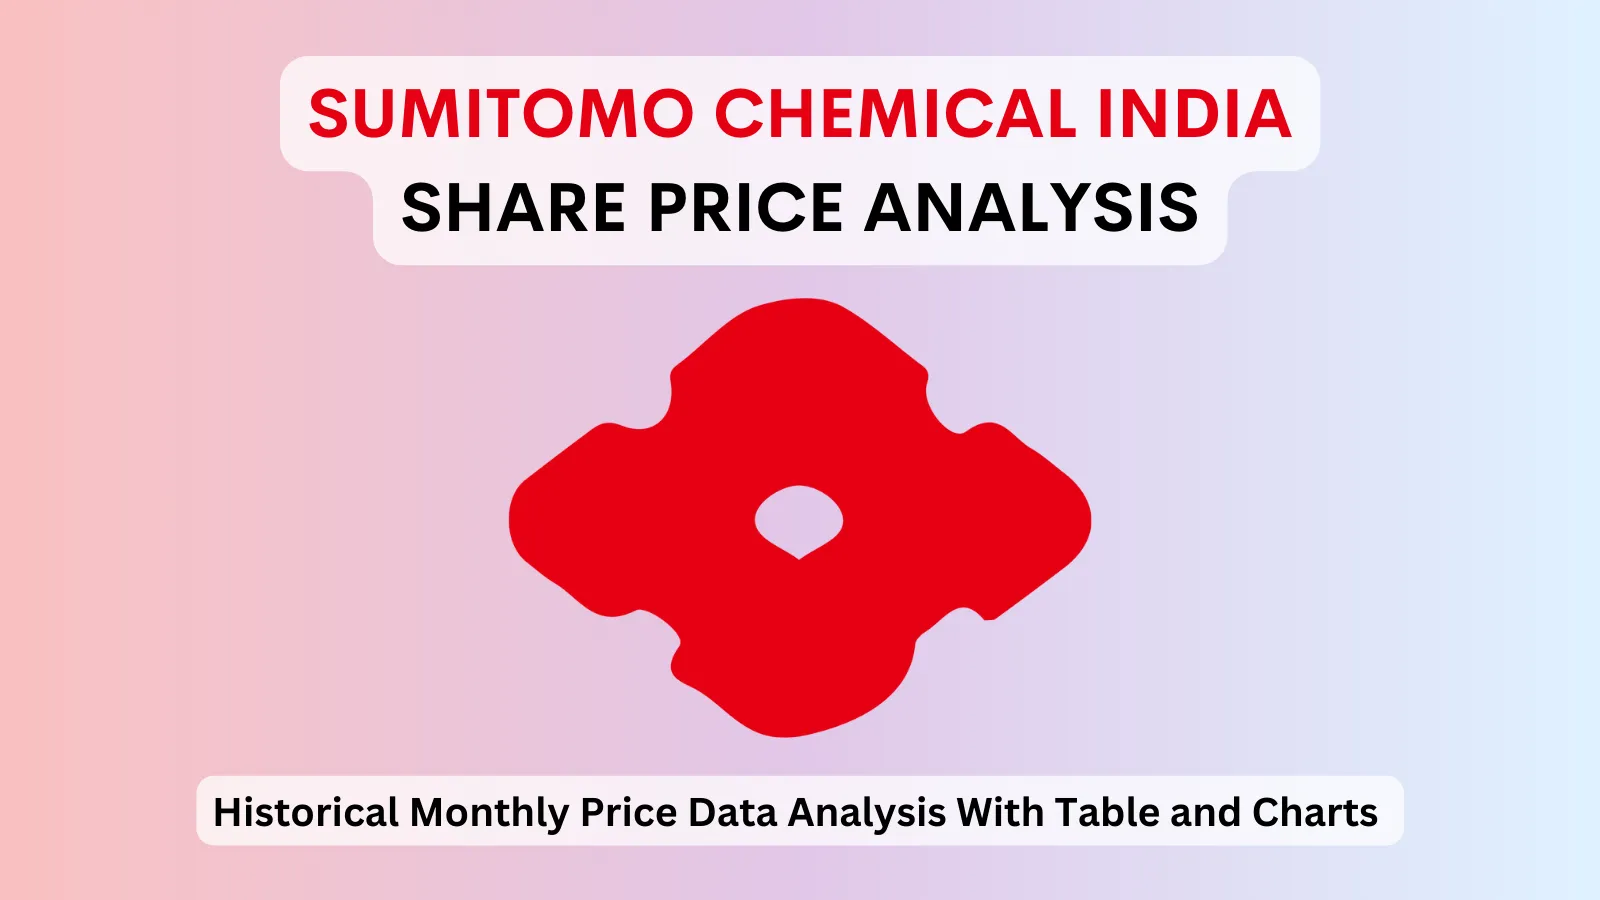 Sumitomo Chemical India share price analysis